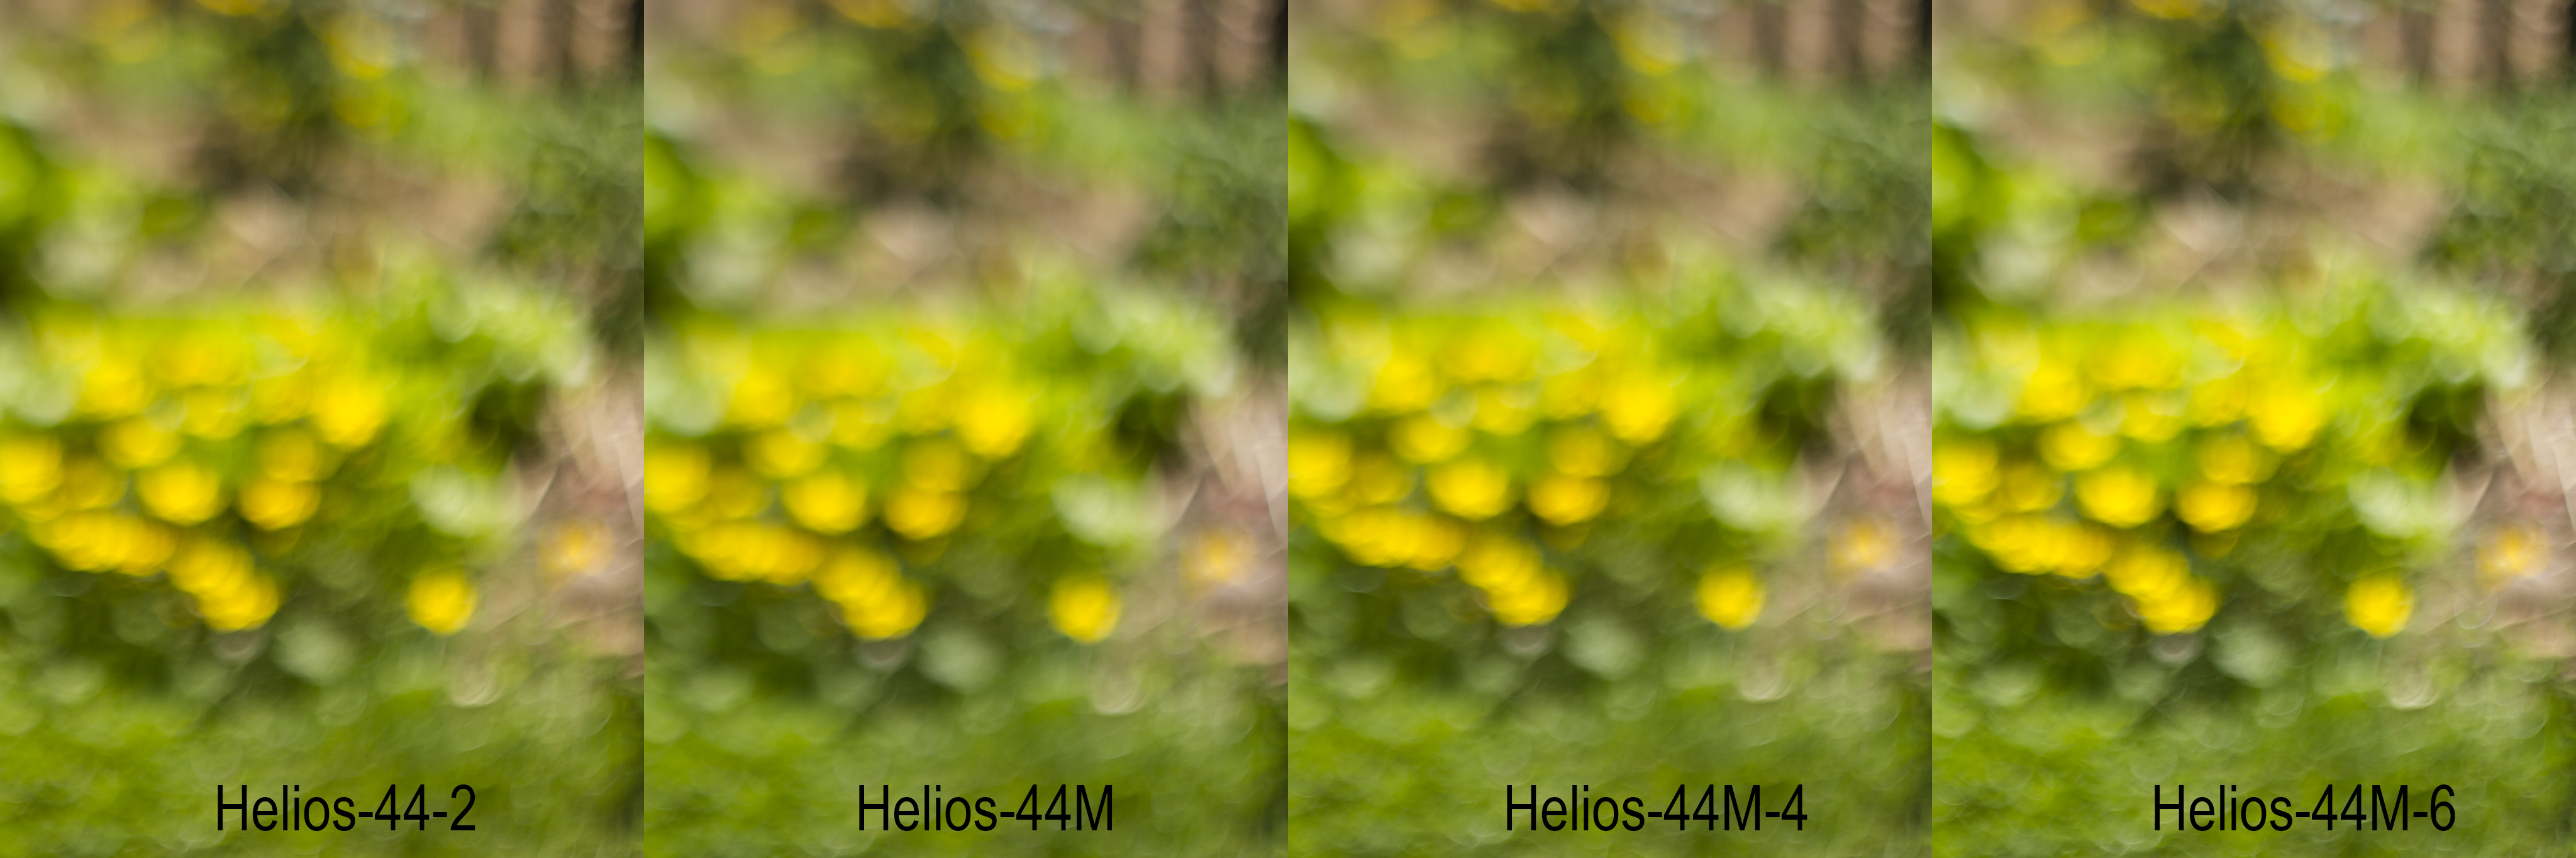 Comparatif entre les bokehs des Helios 44-2, 44M, 44M-4 et 44M-6